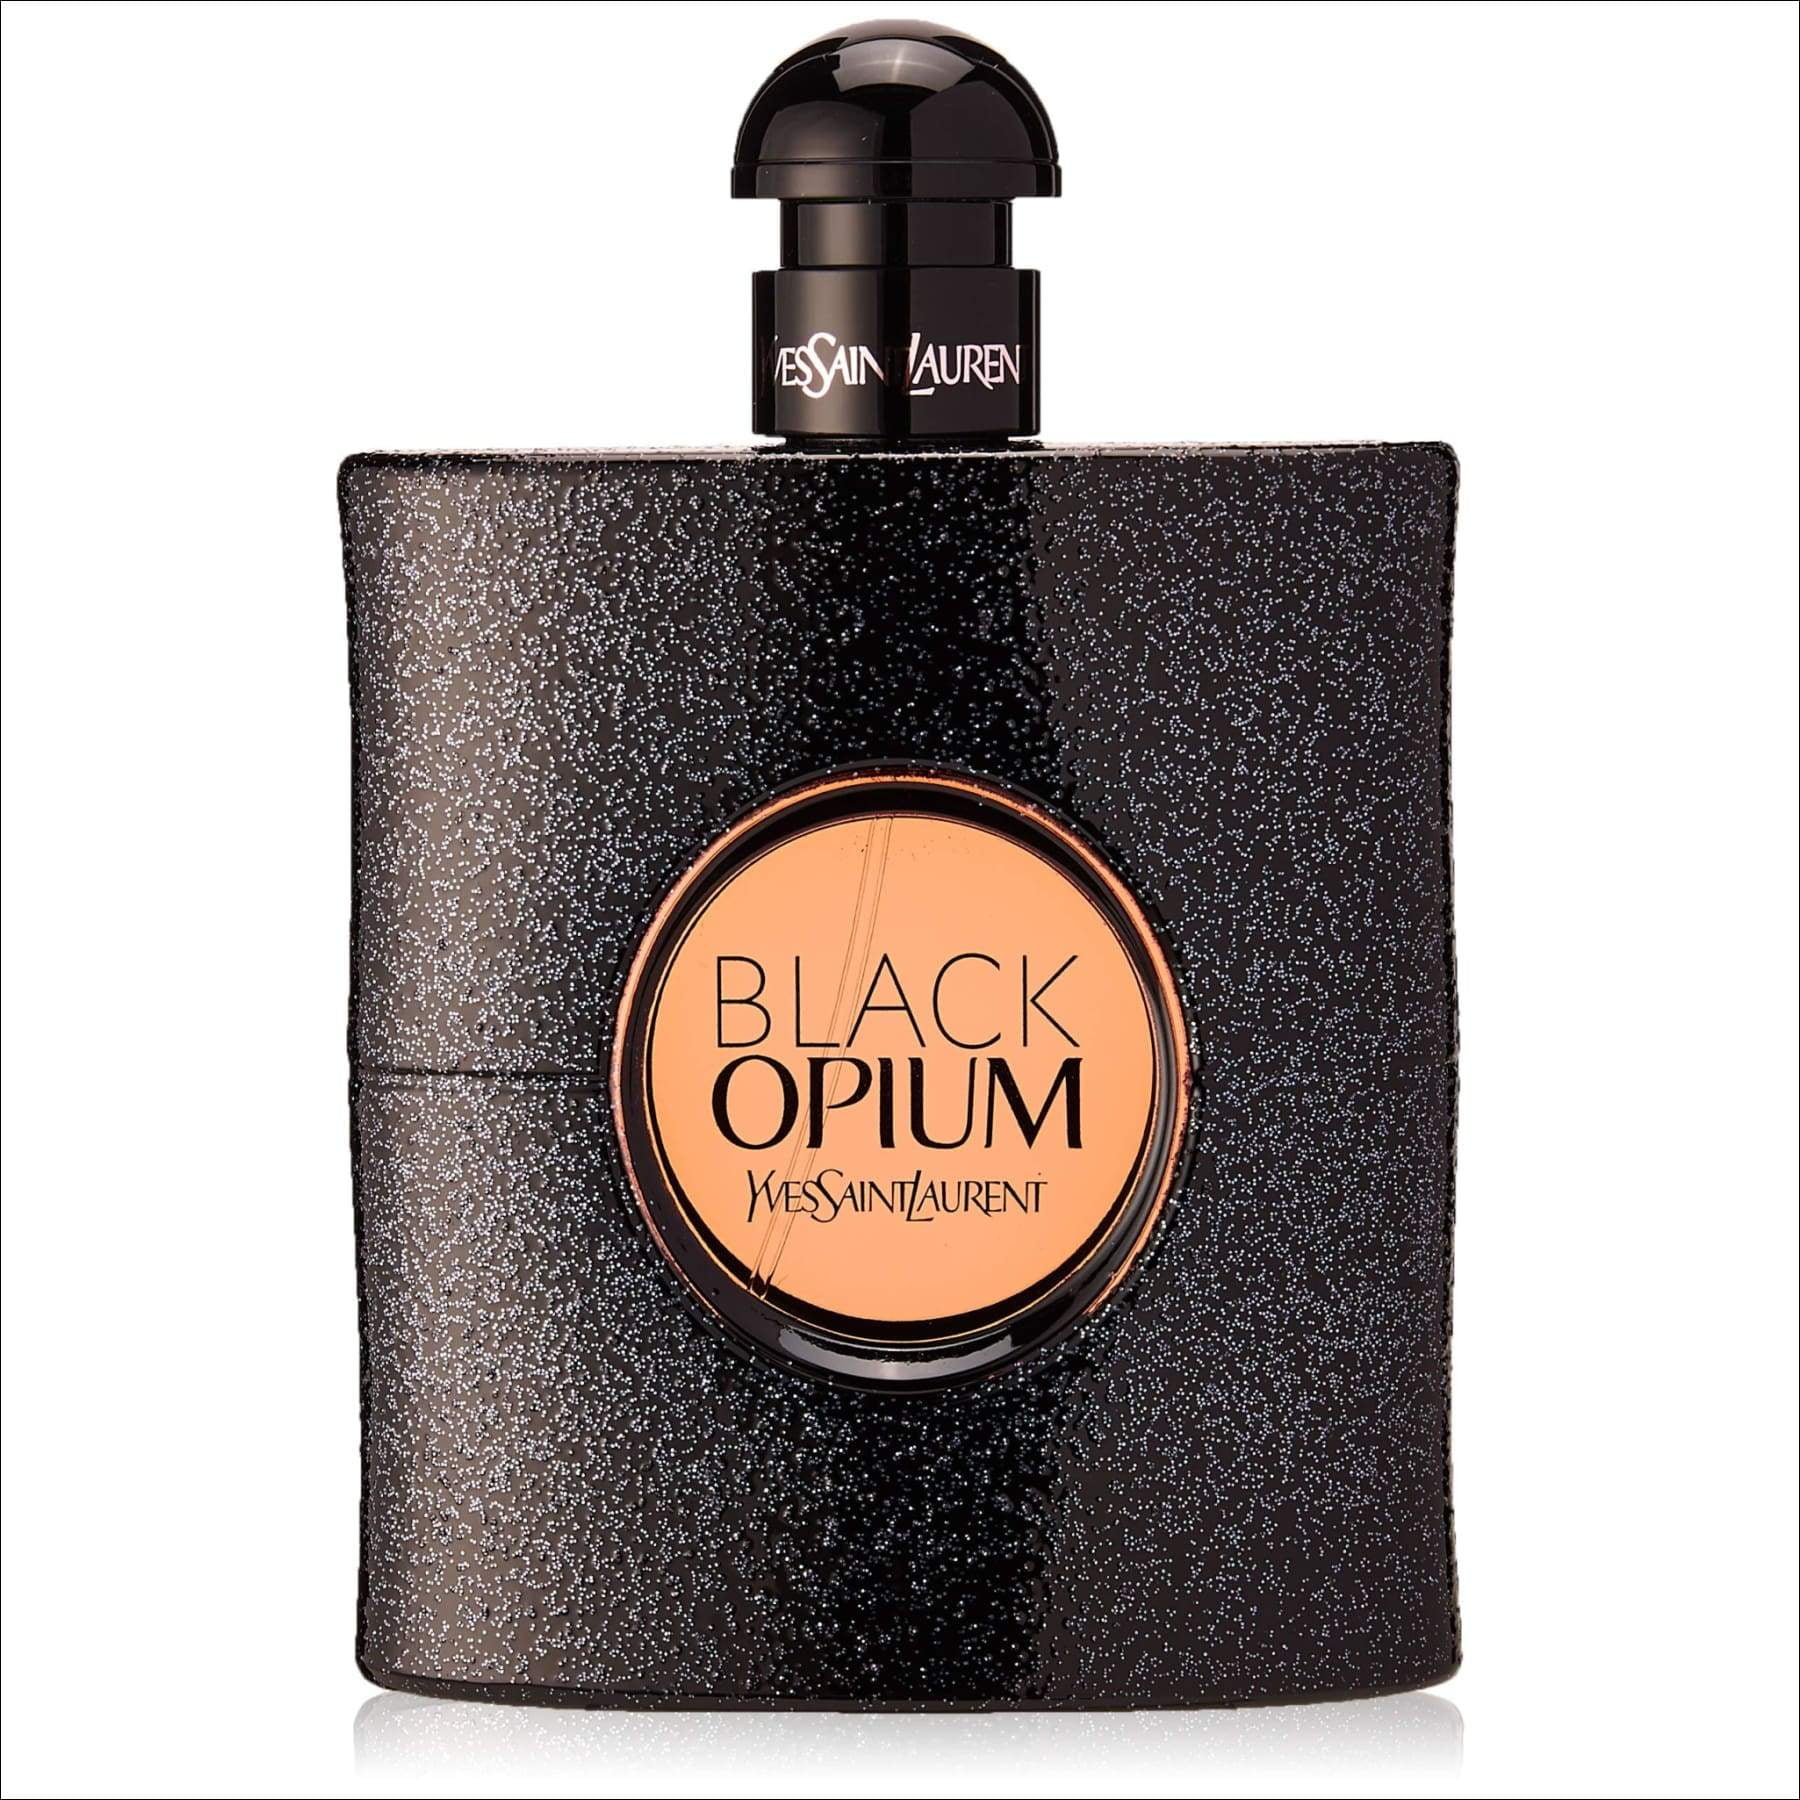 Yves Saint Laurent Black Opium Eau de Parfum Perfume for Women, 1 Mini & Size - Walmart.com